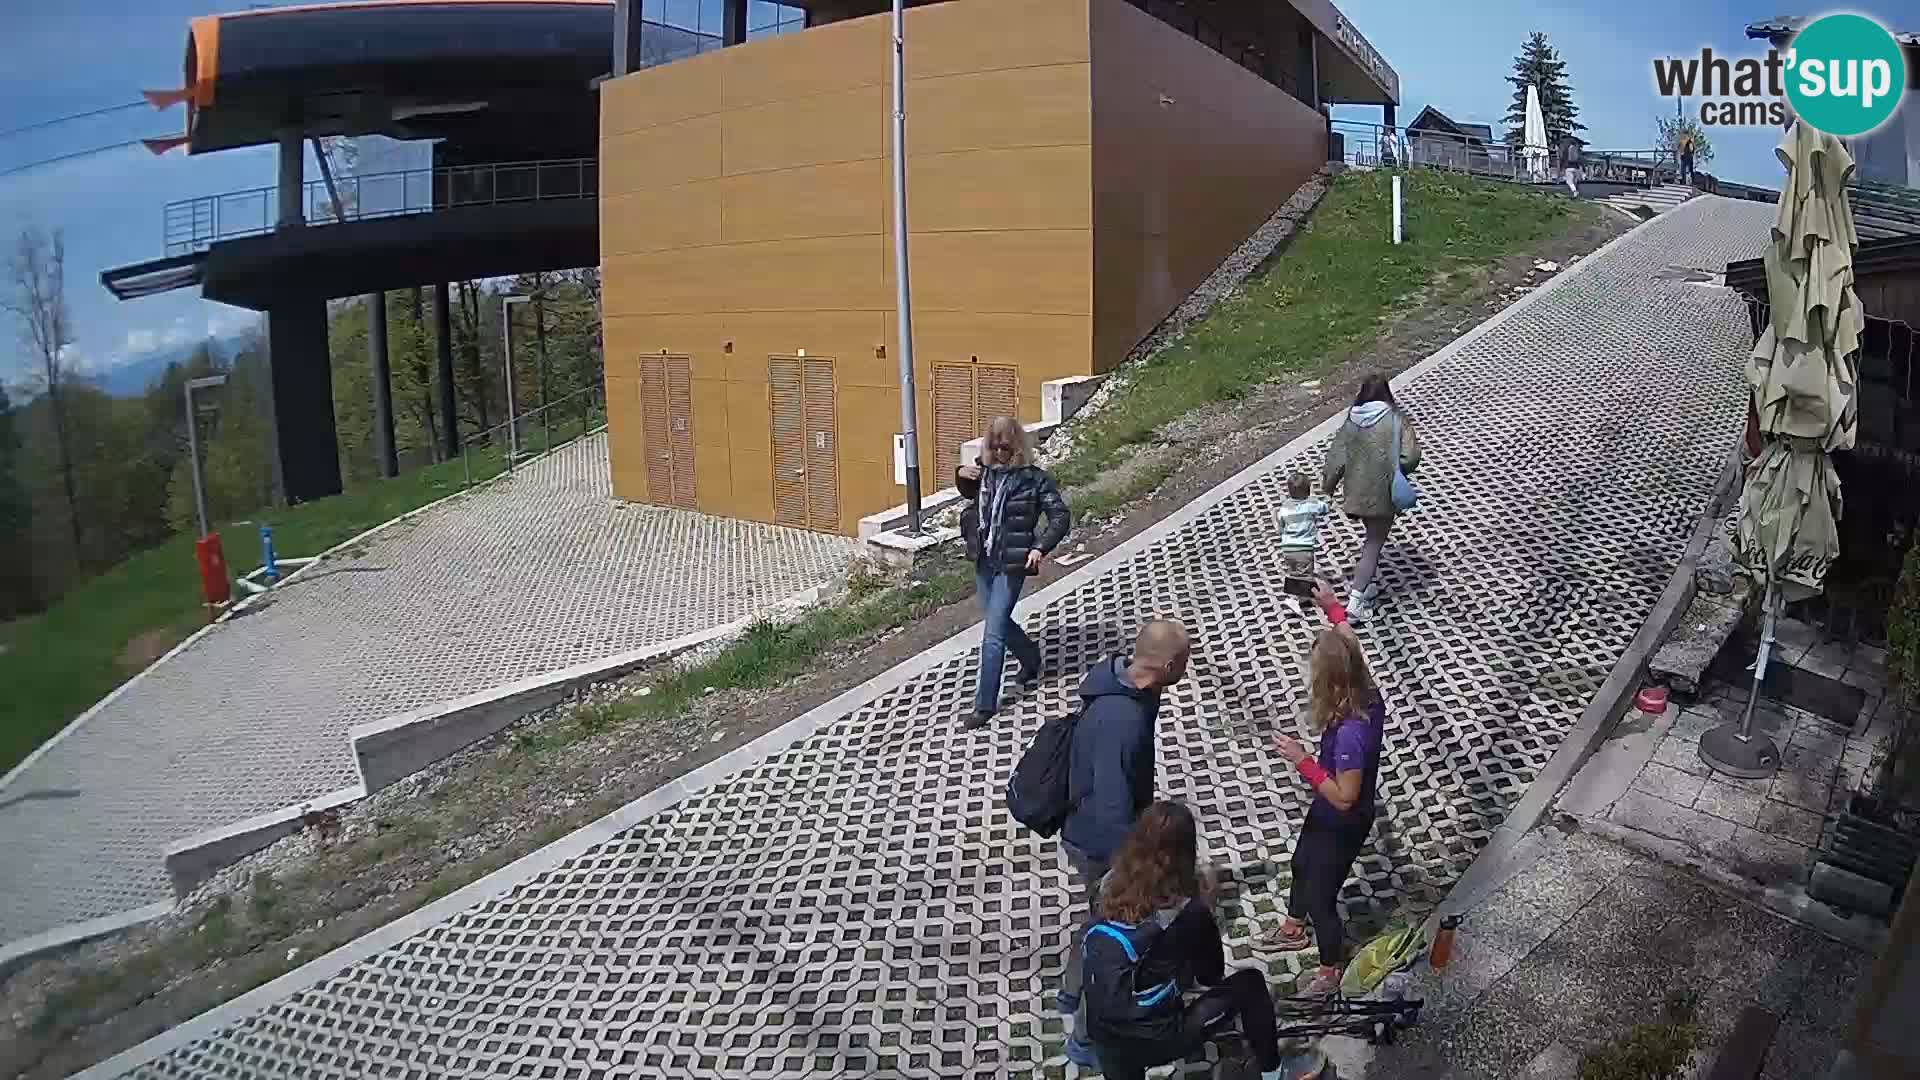 Sljeme – ski center near Zagreb